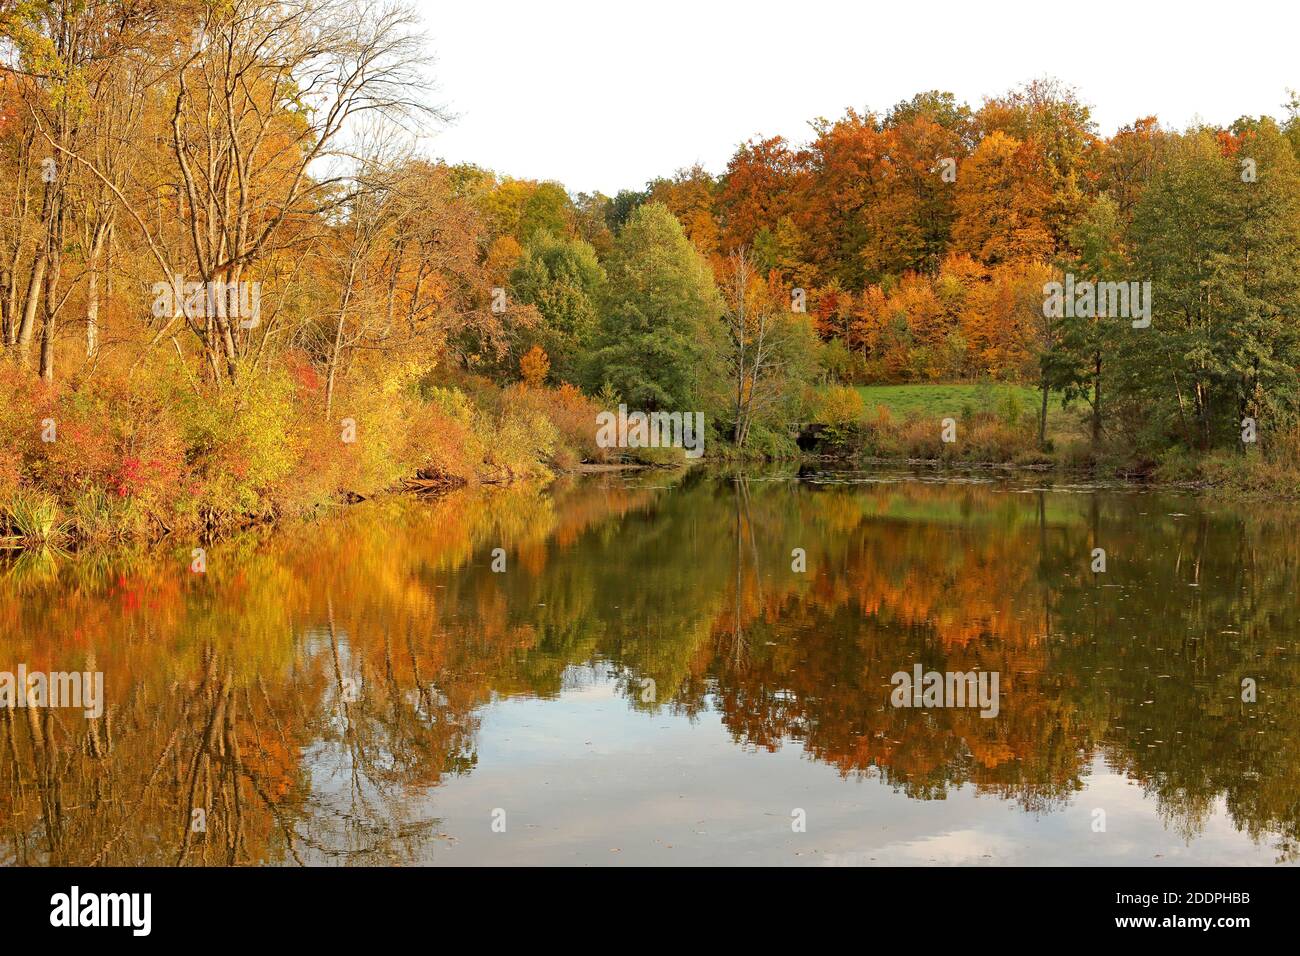 Ambiance d'automne dans un lac, Allemagne, Bade-Wurtemberg Banque D'Images